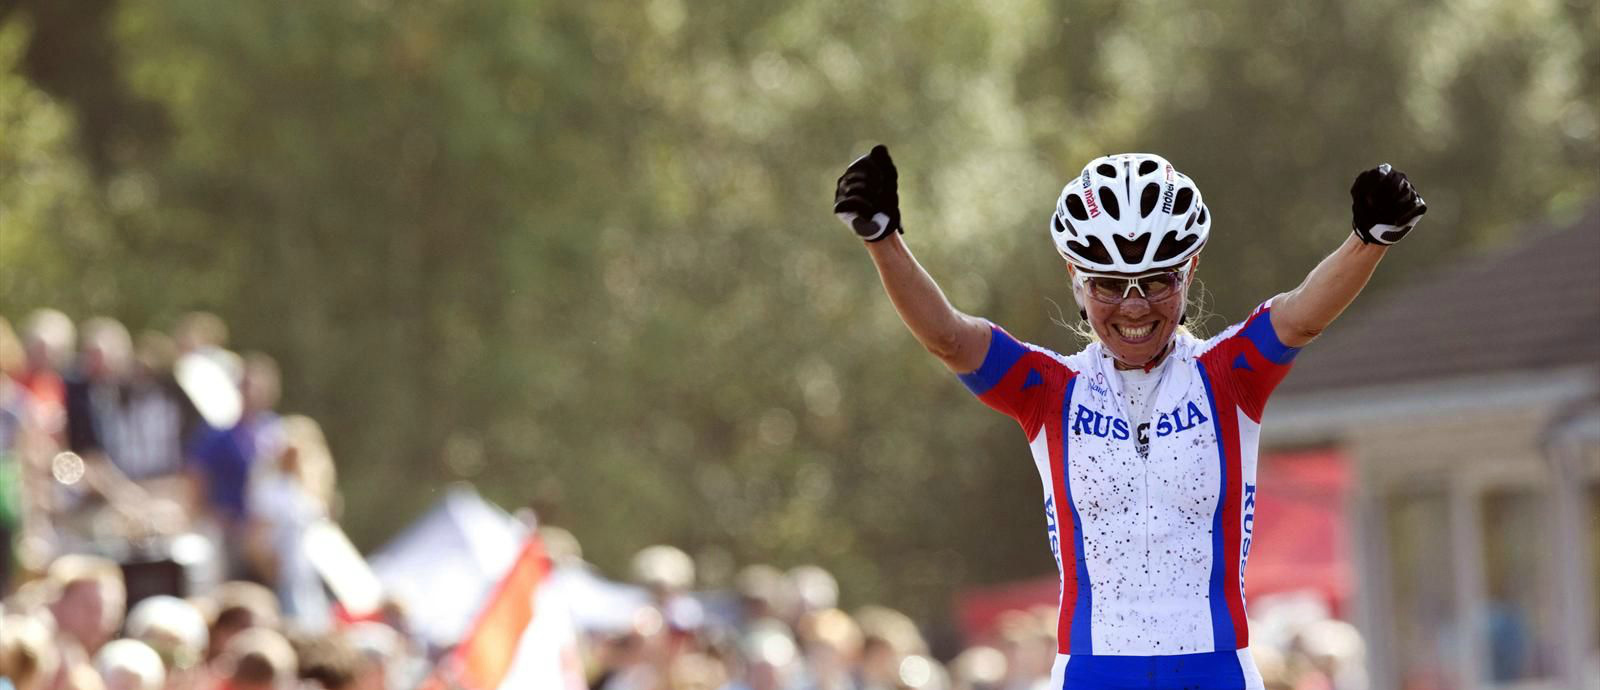 Мордовская велогонщица победила на соревнованиях в Швейцарии